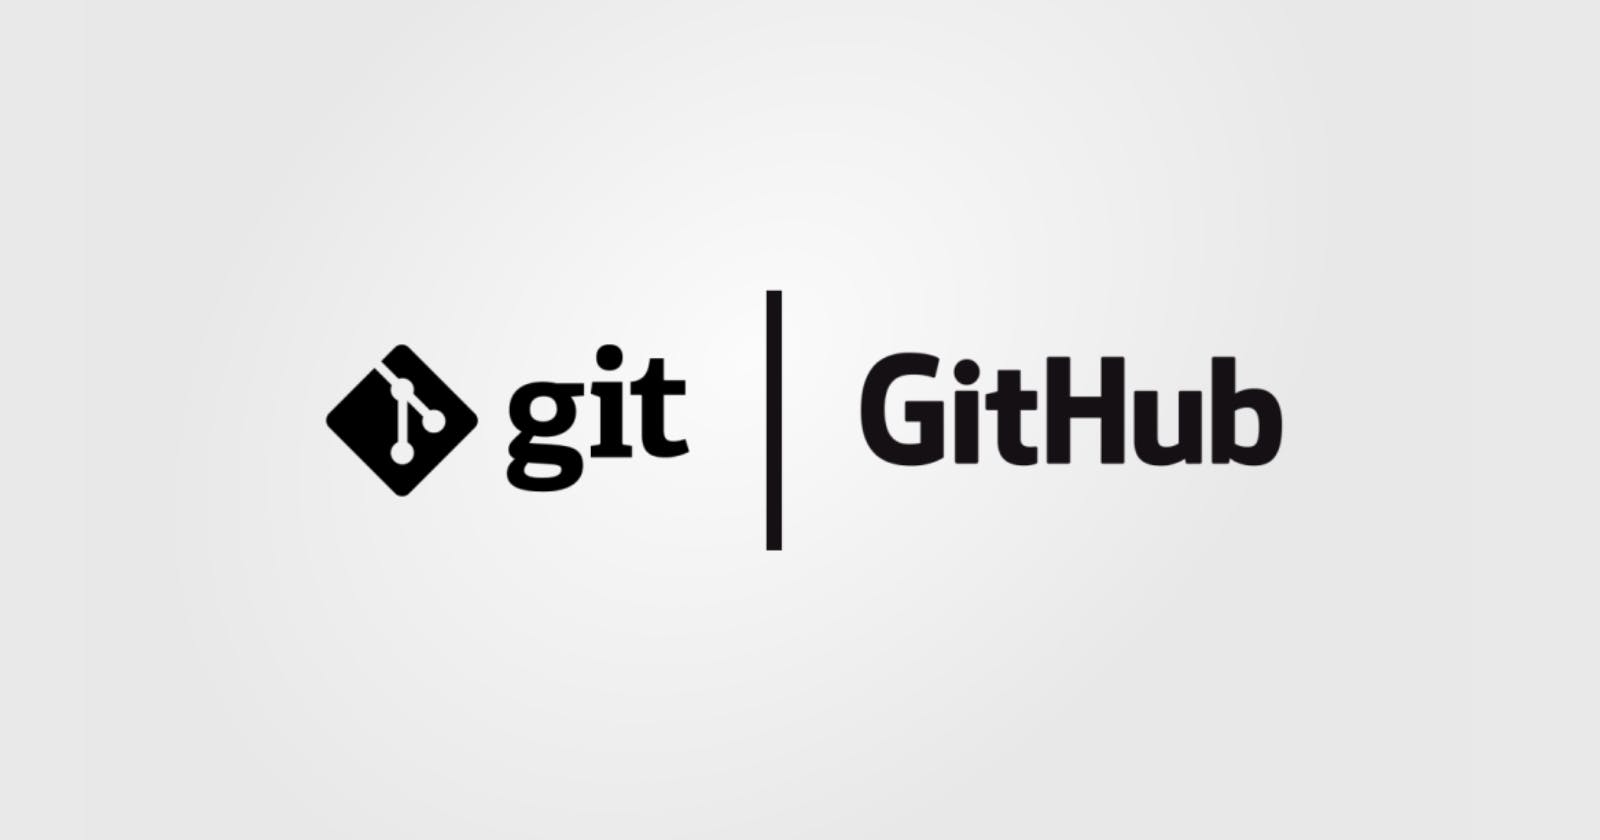 Git GitHub-Day 2 of 40 days MERN Stack